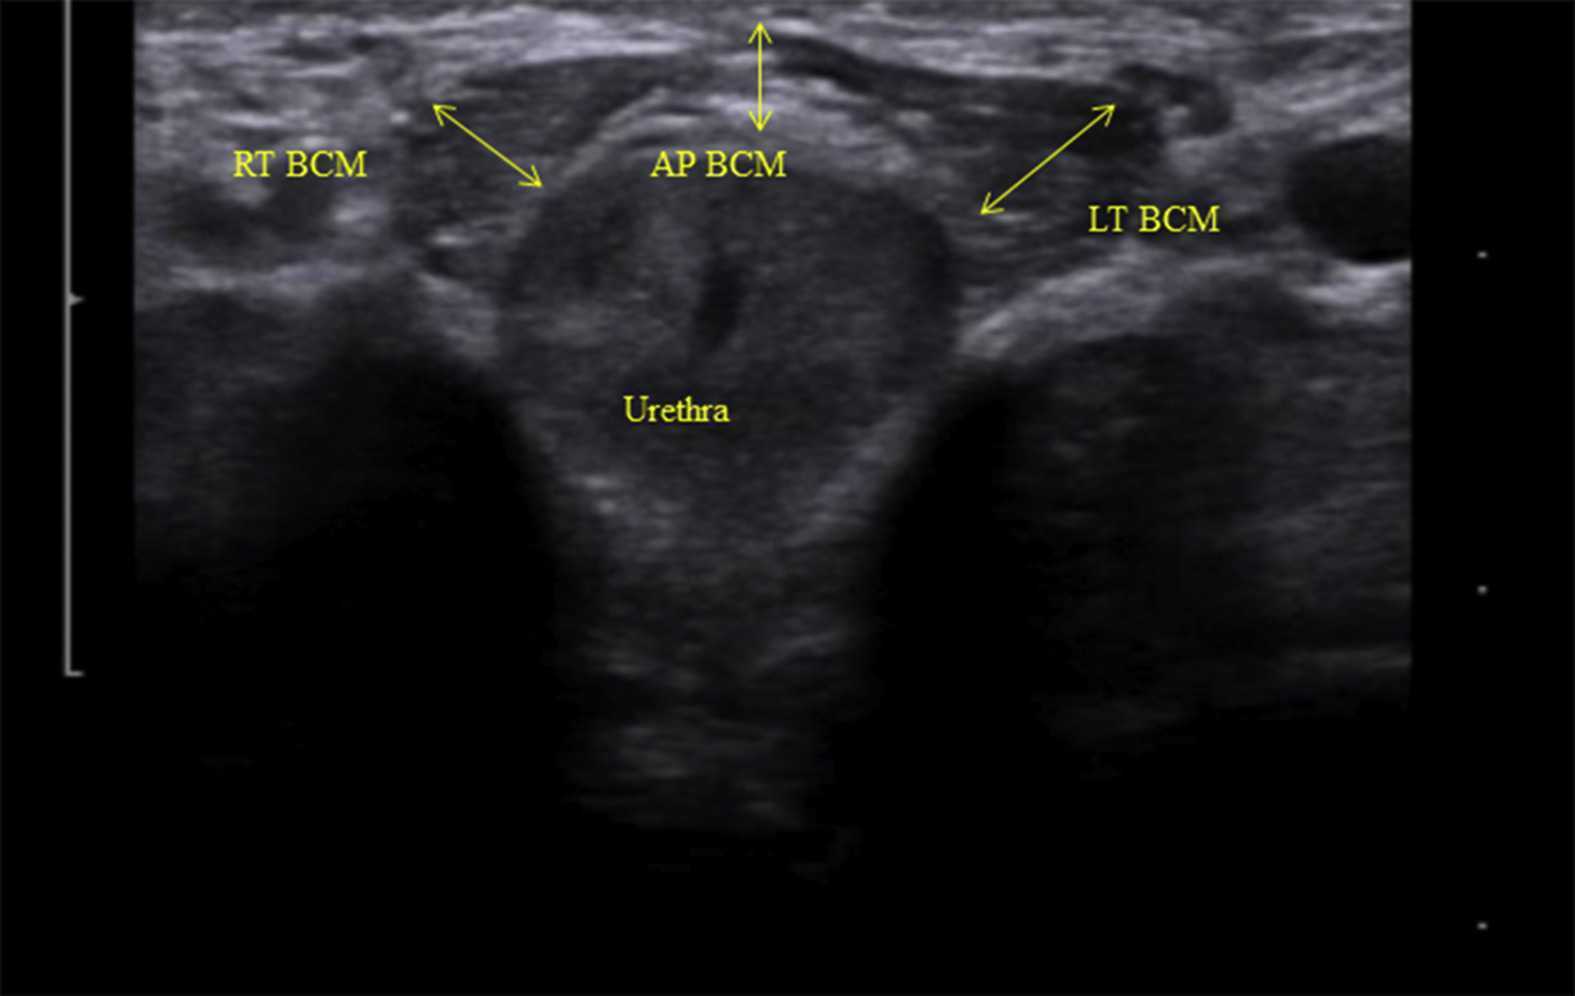 Rehabilitative Ultrasound Imaging for Men’s Pelvic Health